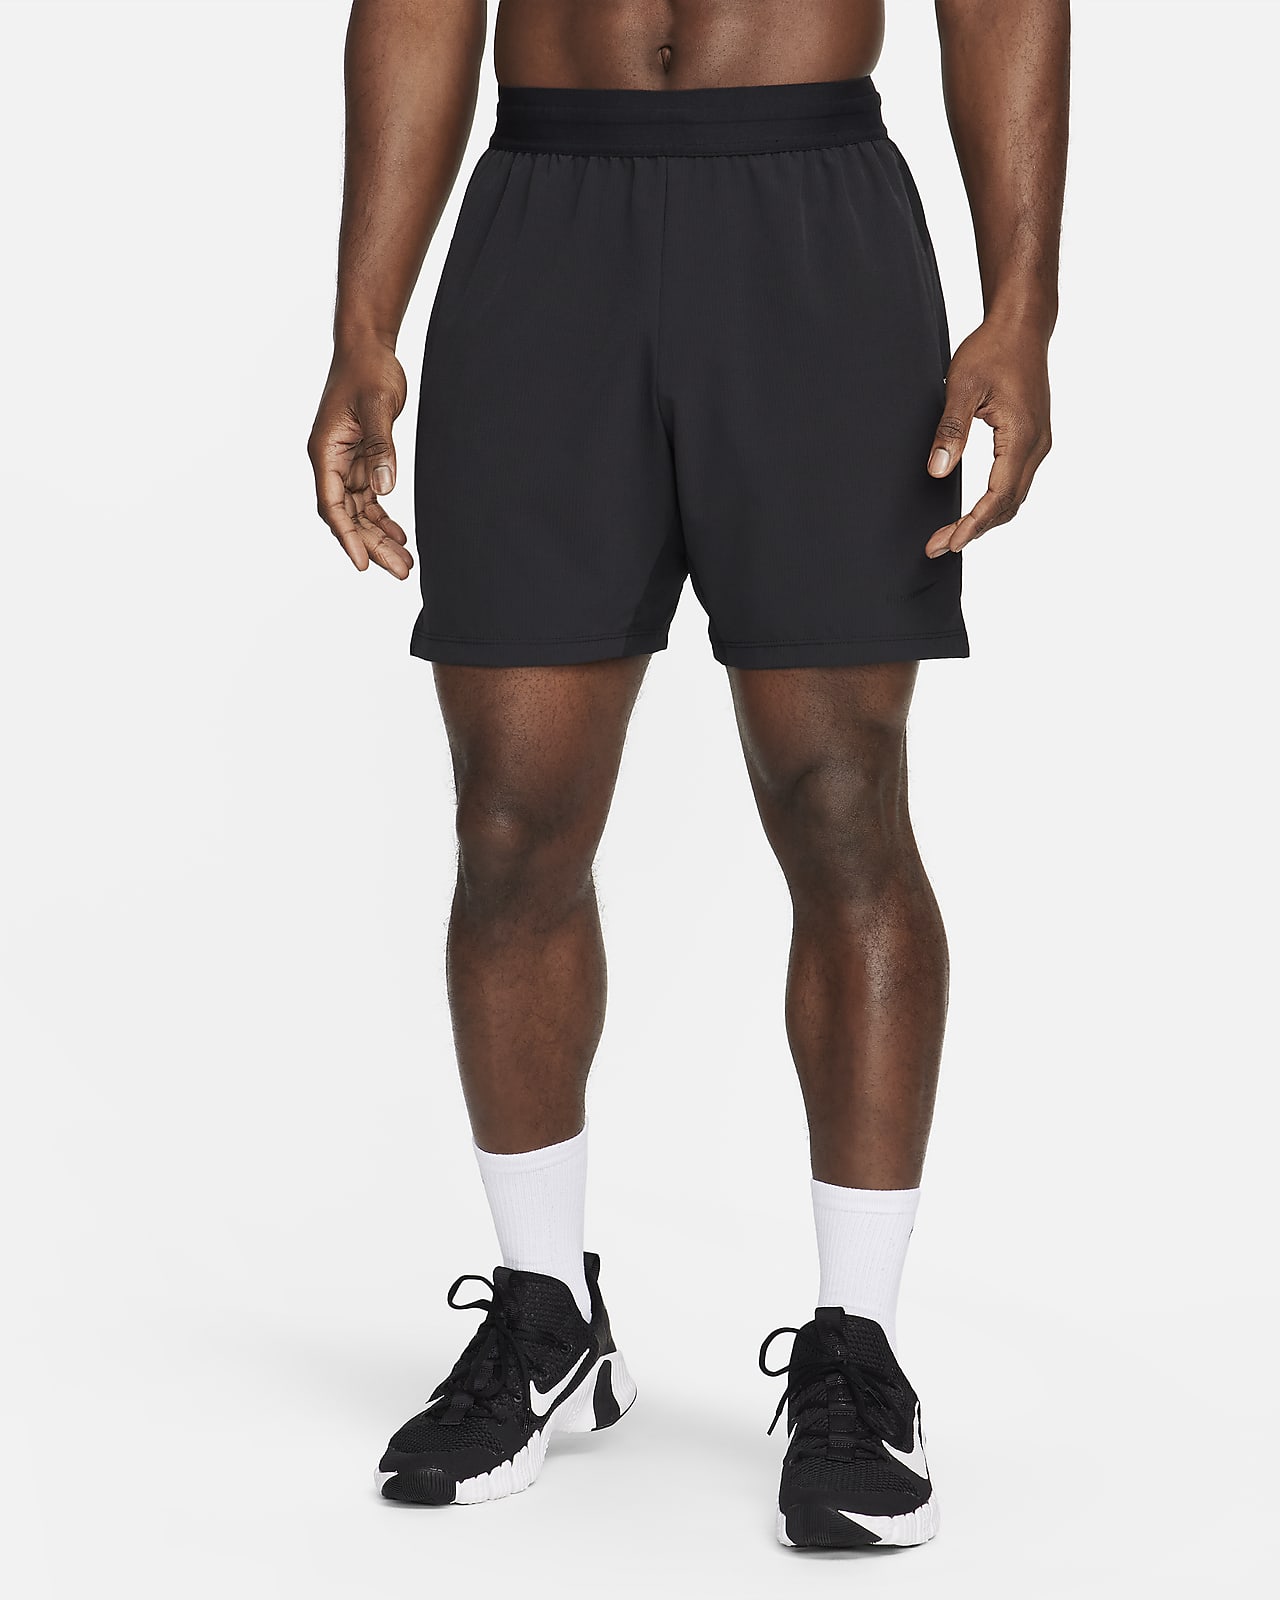 Pánské 18cm fitness kraťasy Nike Flex Rep 4.0 bez podšívky